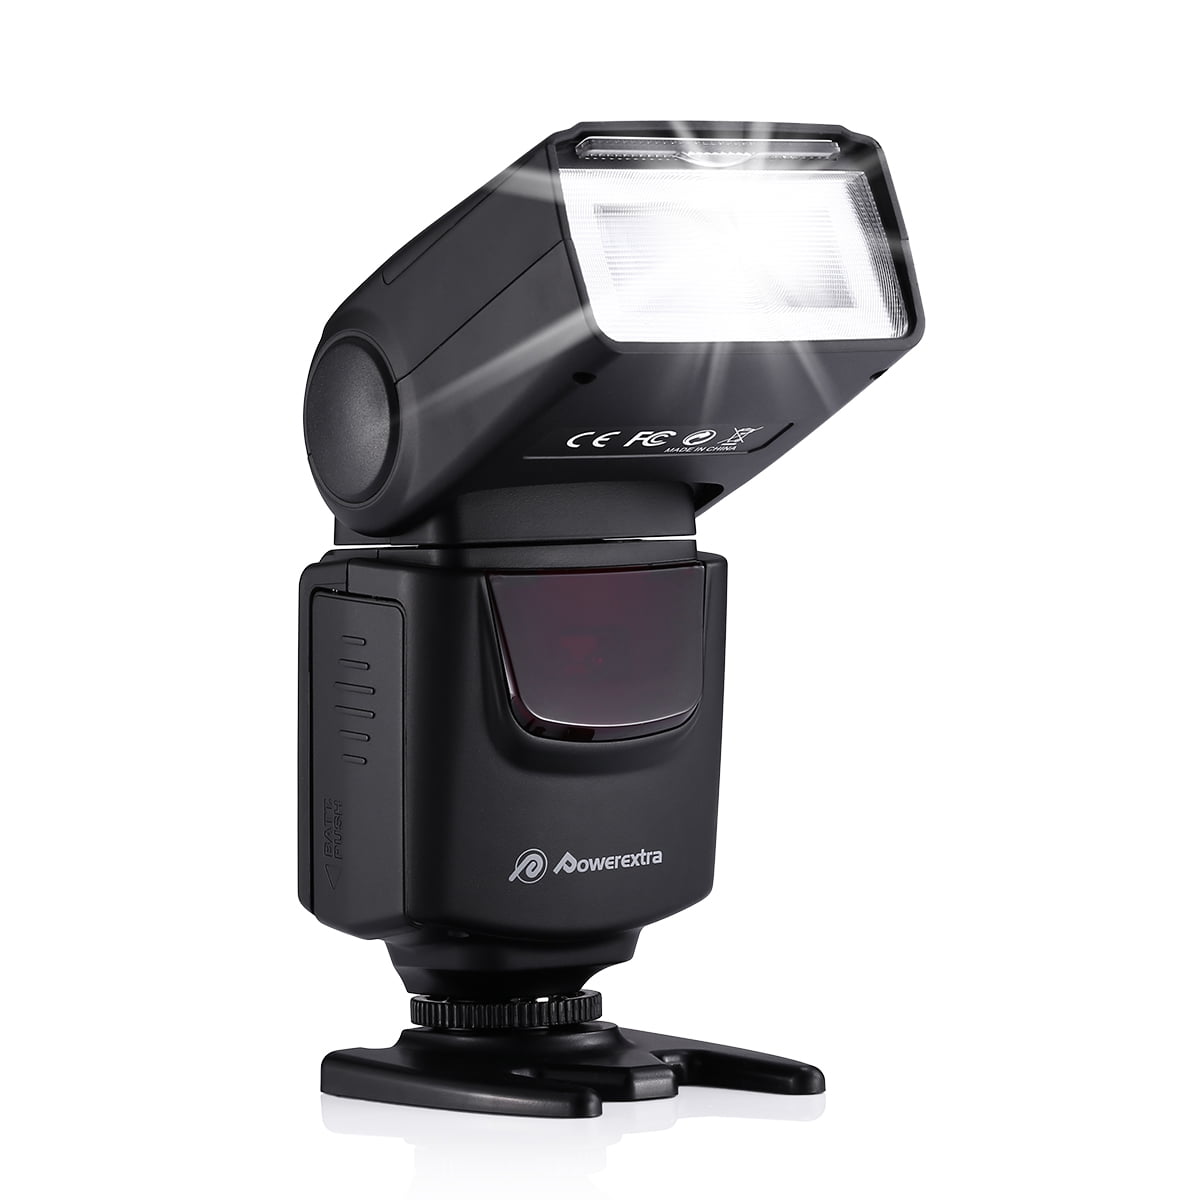 New Original OEM Nikon Flashlight Bulb for SB-800 and SB-600 Flashlight 